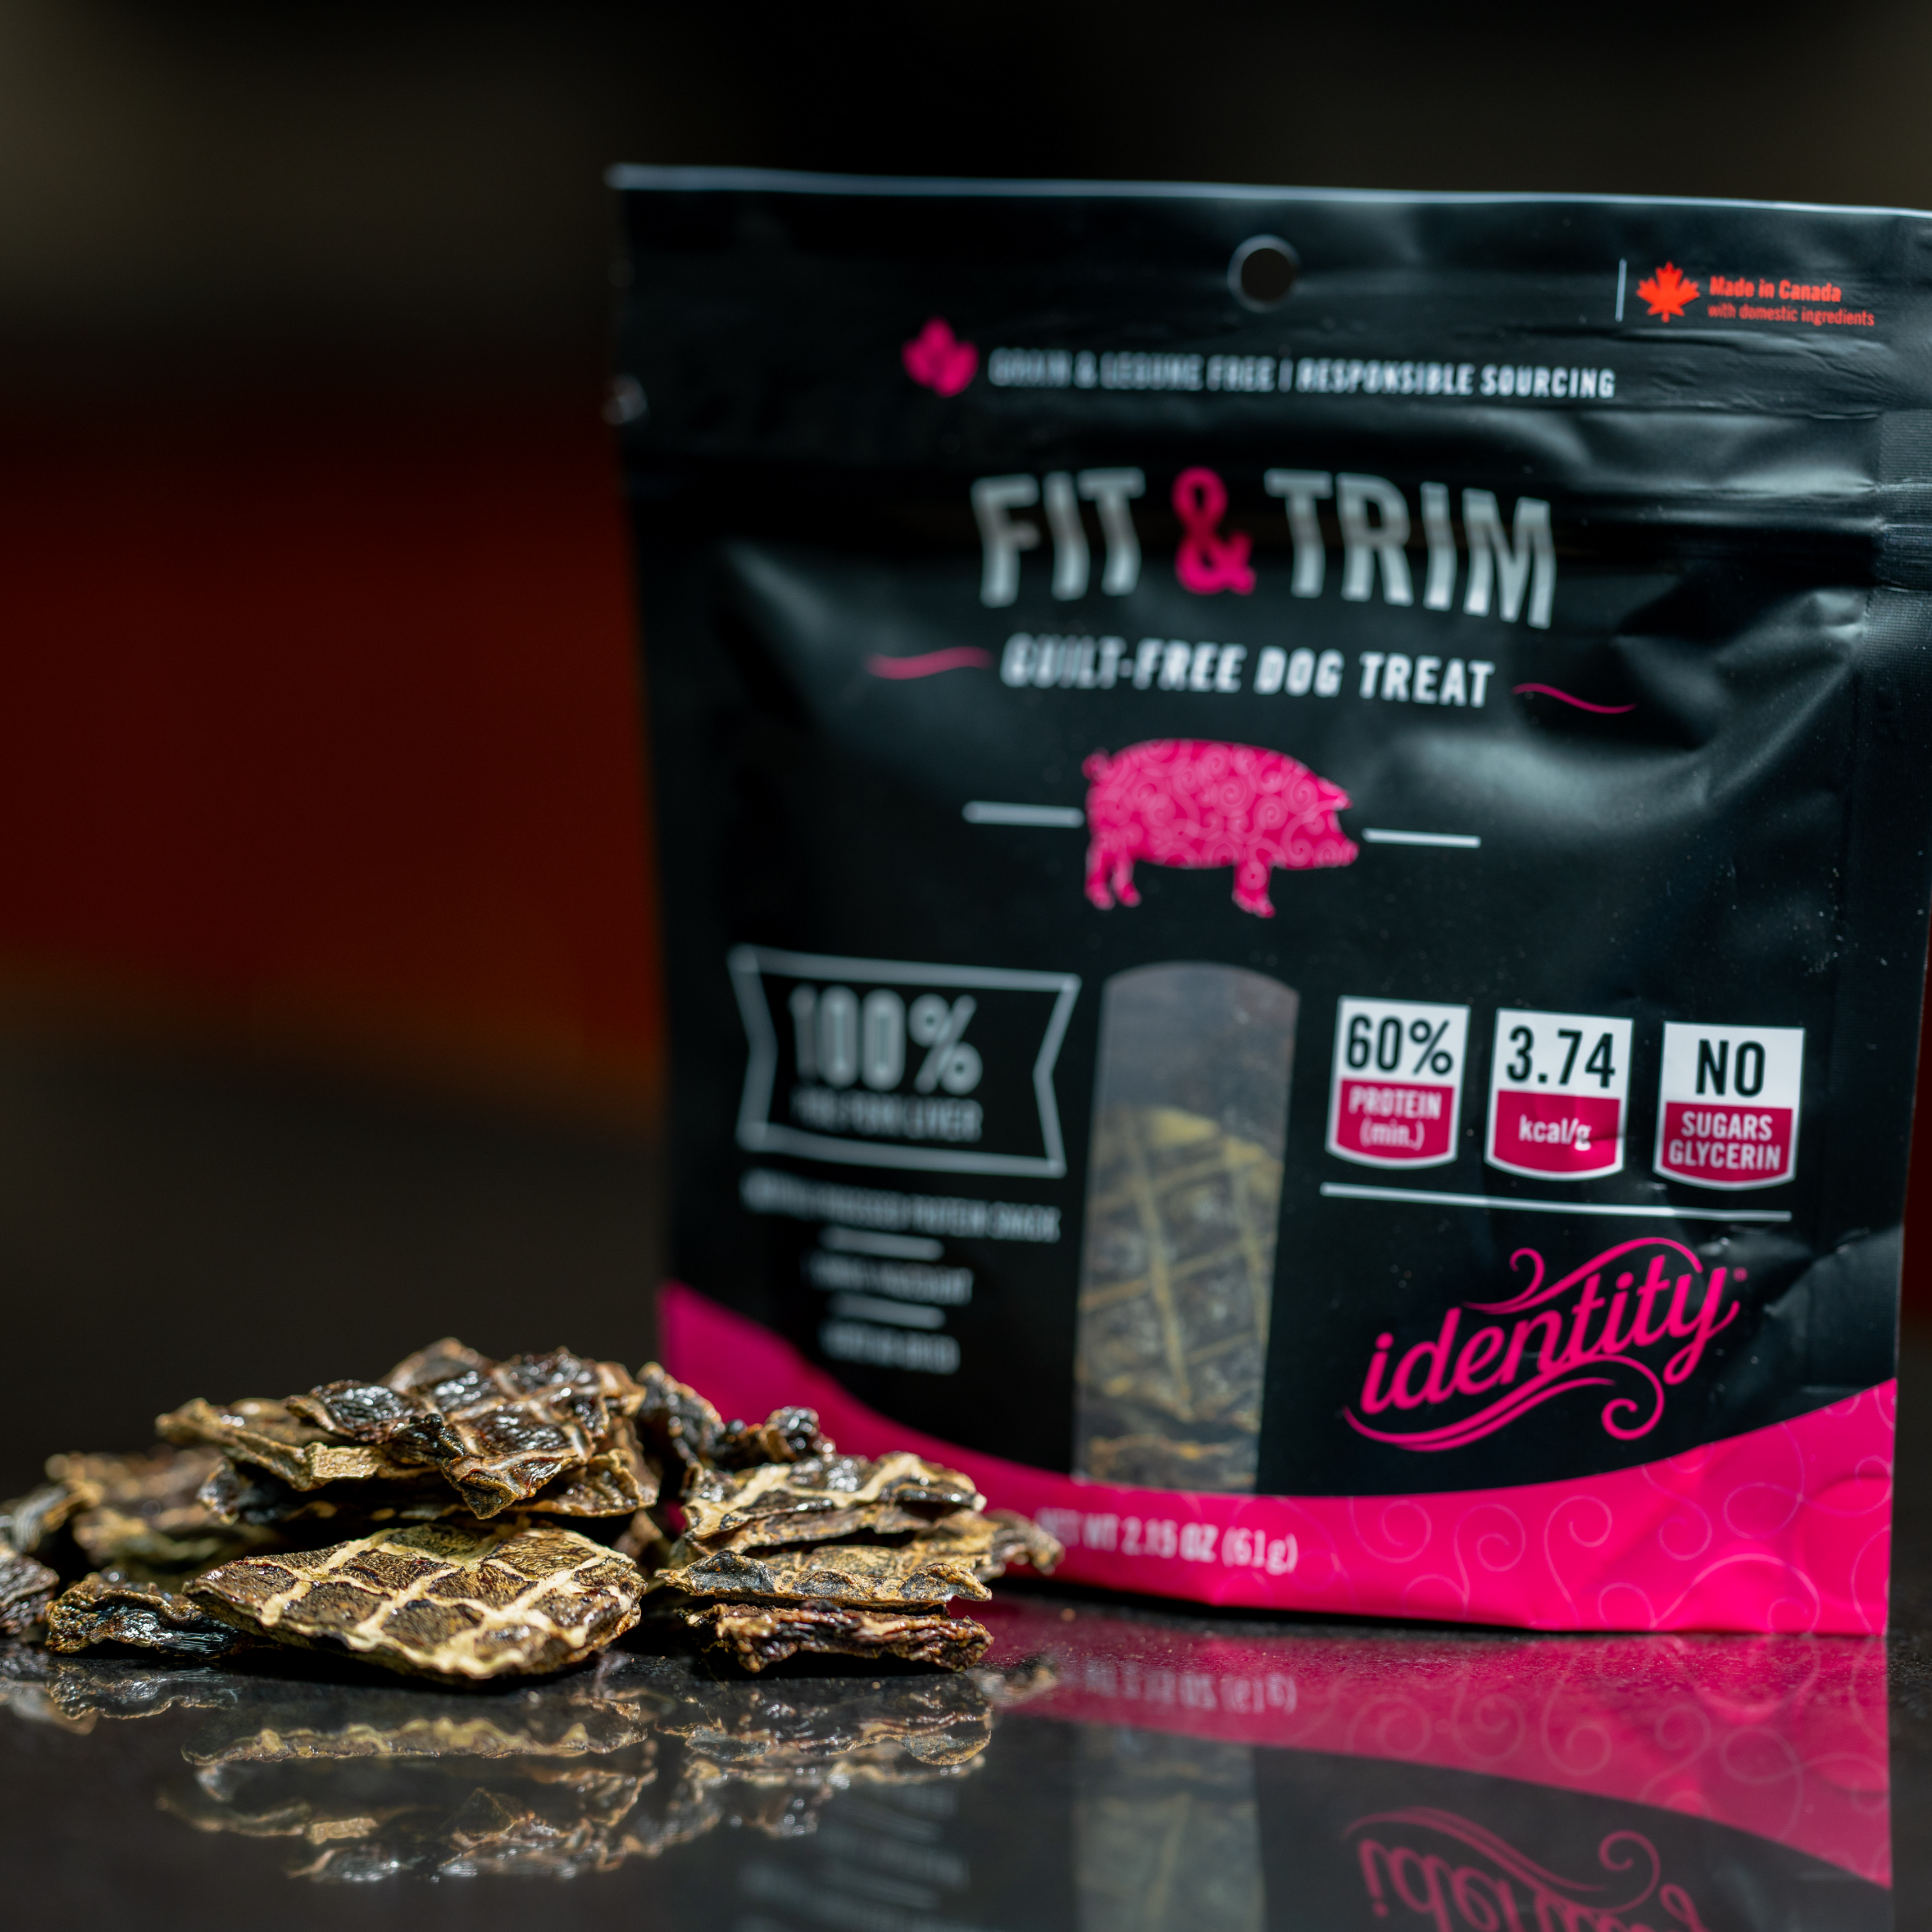 Fit & Trim | 100% Pure, Guilt-Free Air-Dried Pork Liver Dog Treats